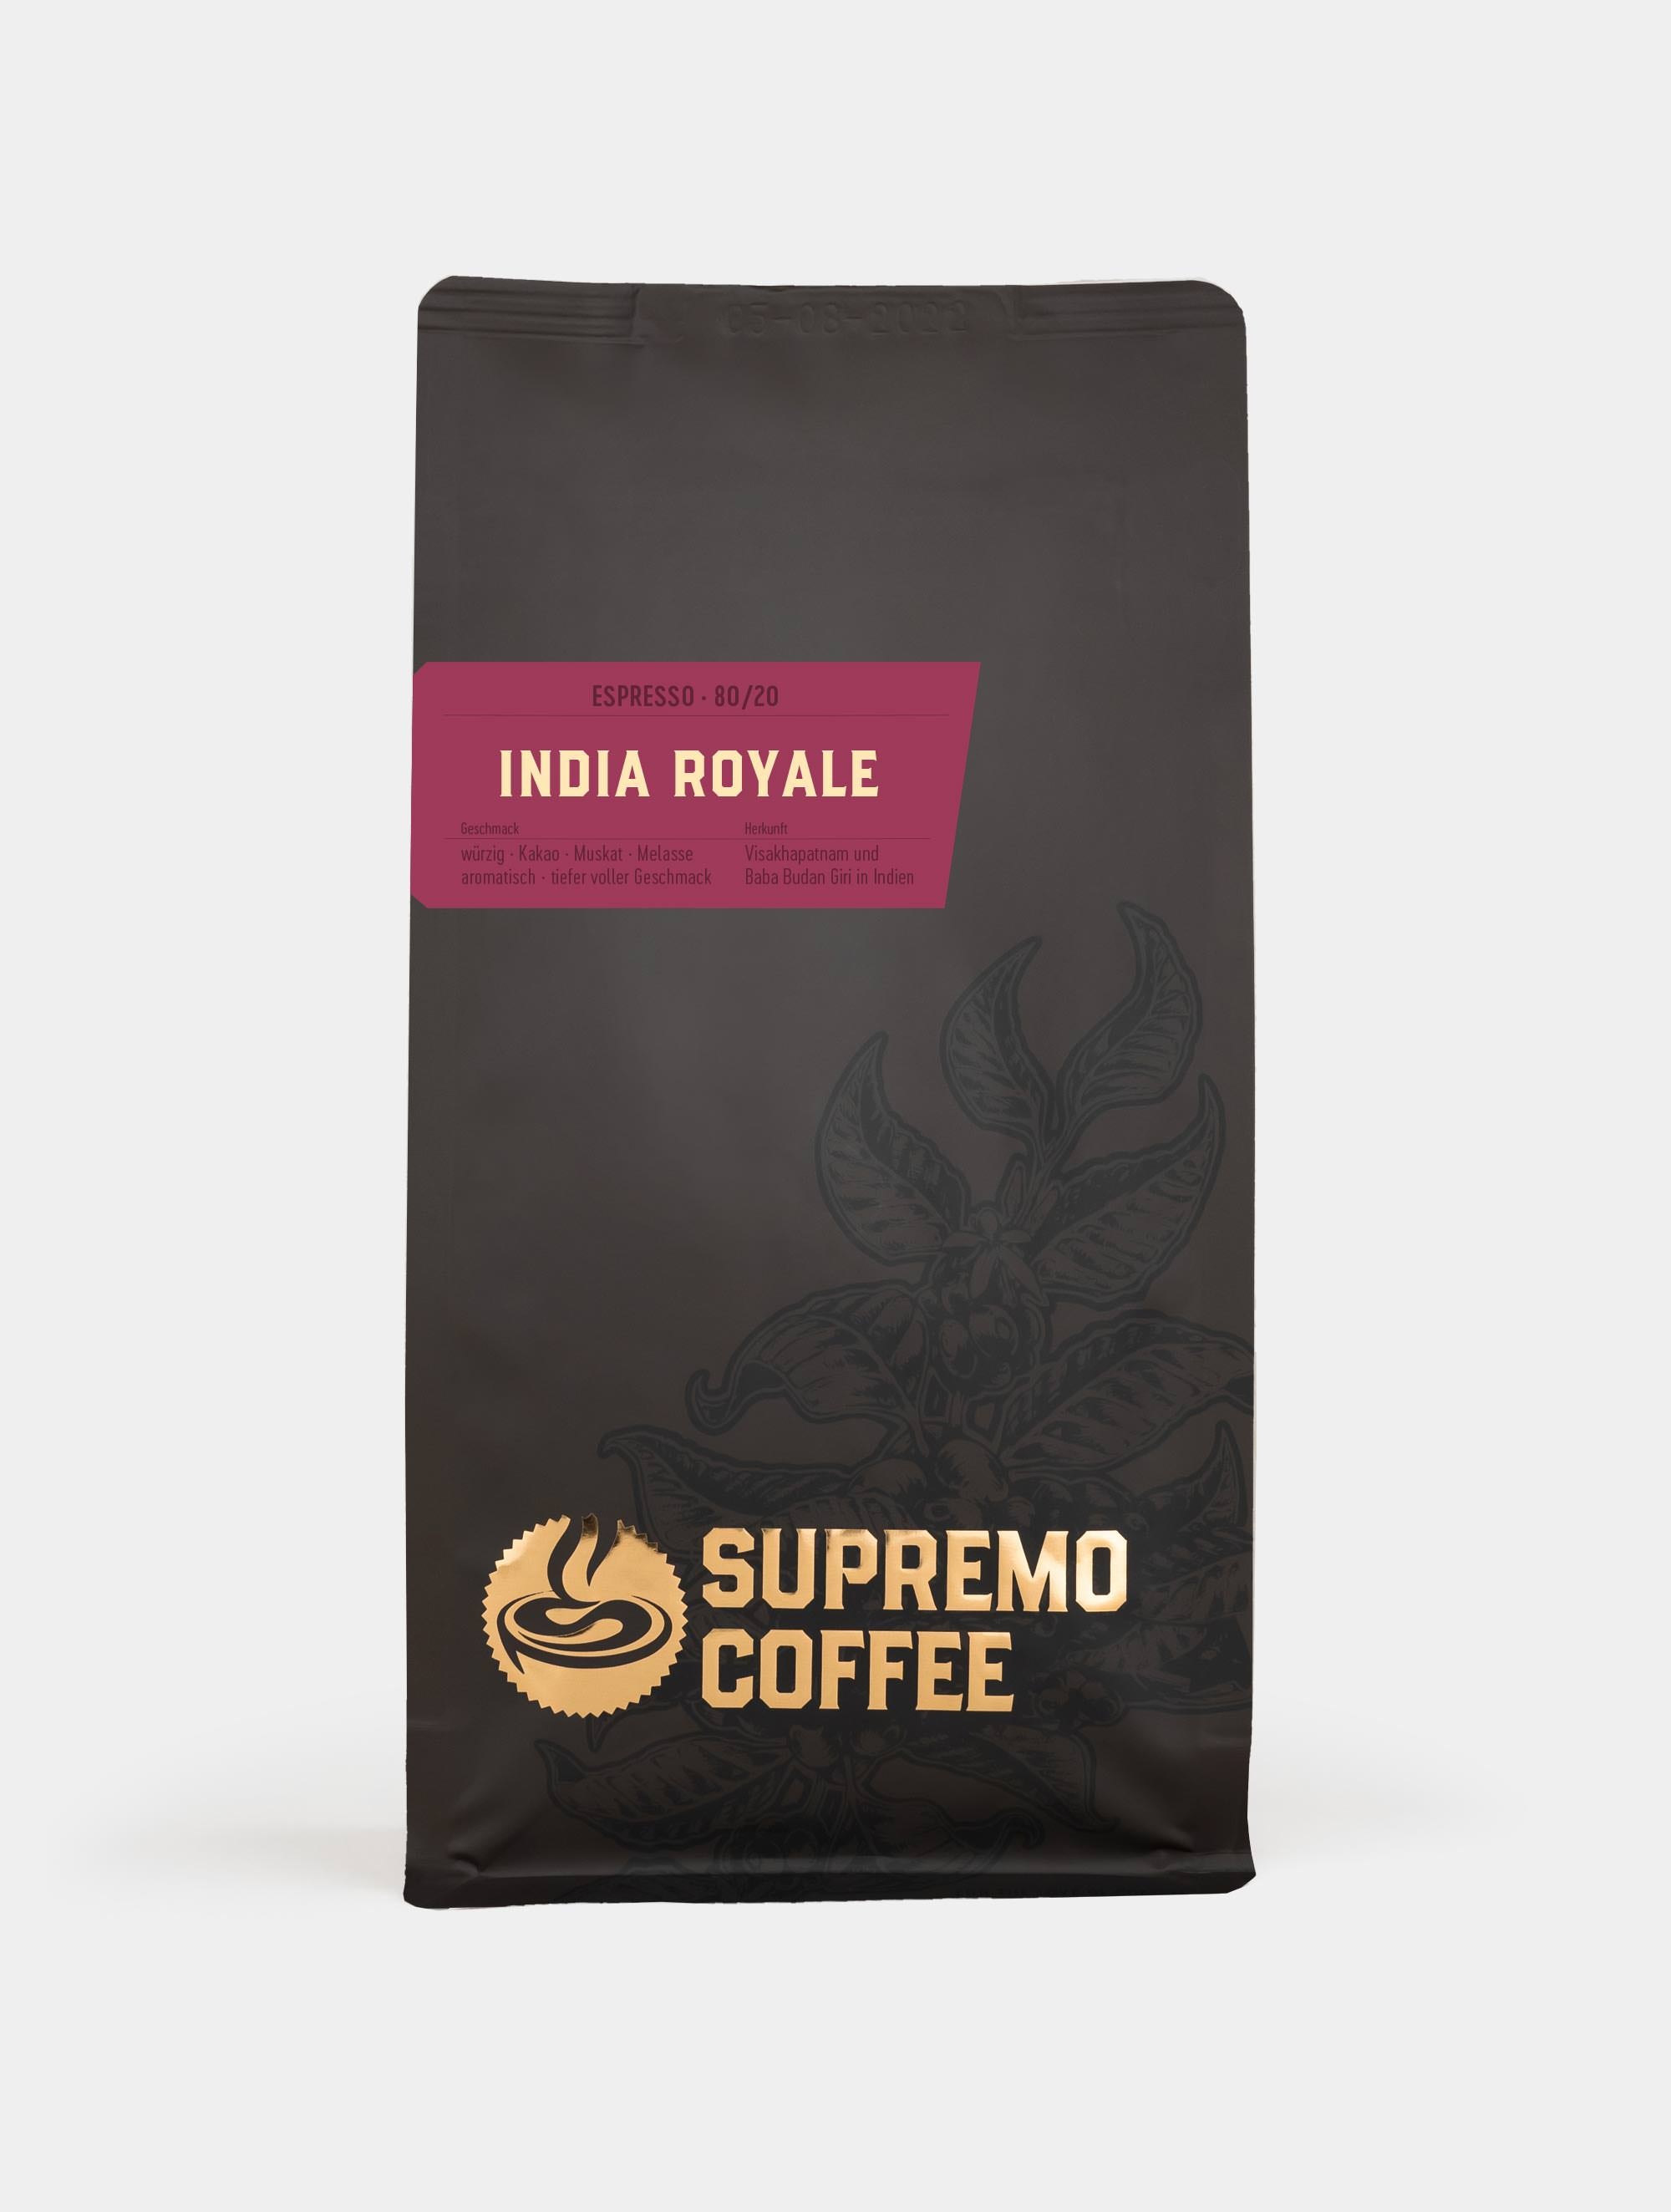 India Royale, Espresso 80/20 | SUPREMO Coffee